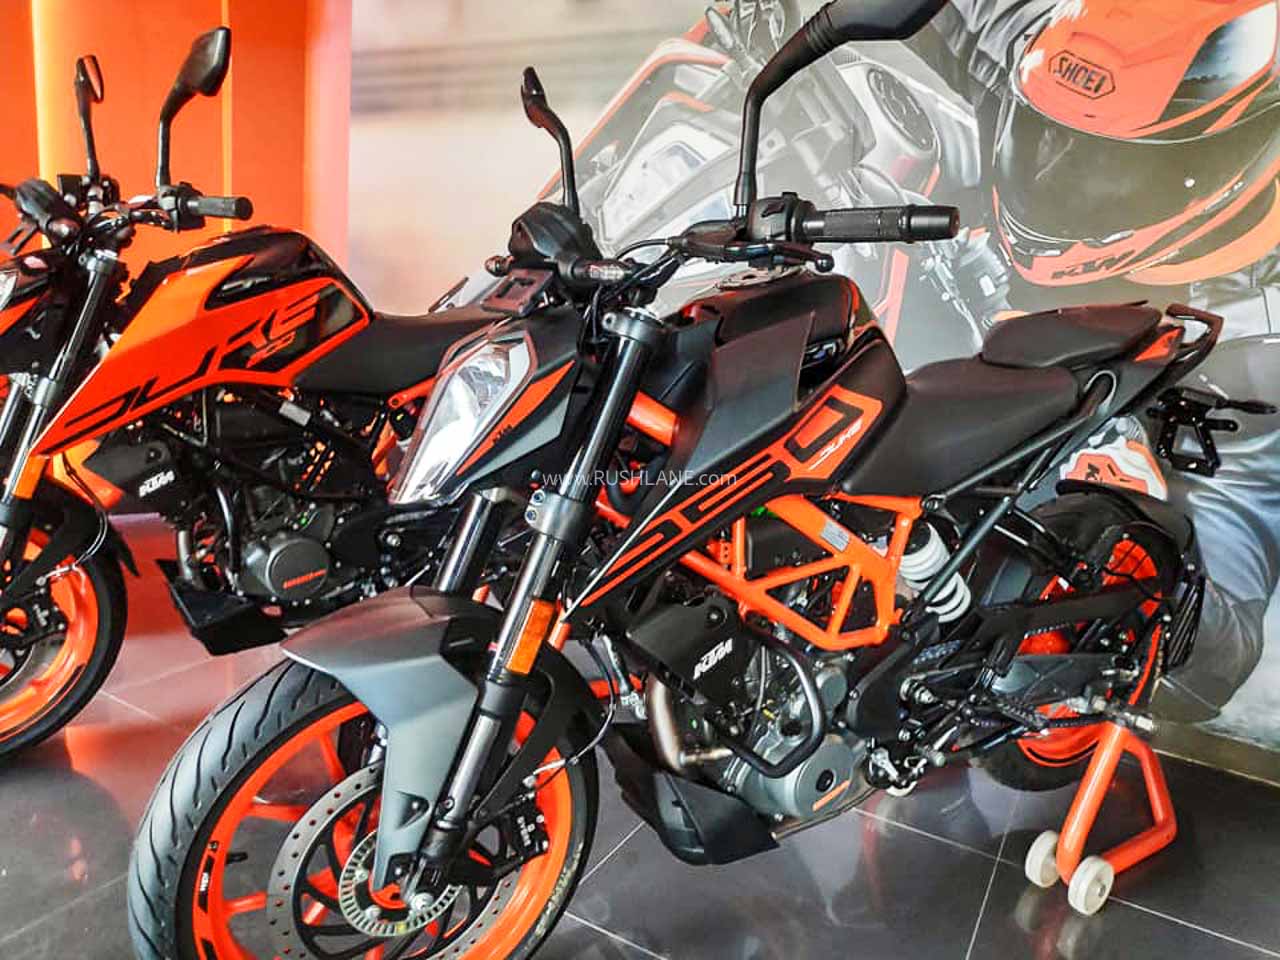 Rc 125 Ktm Bike Price In India 2020 New Model